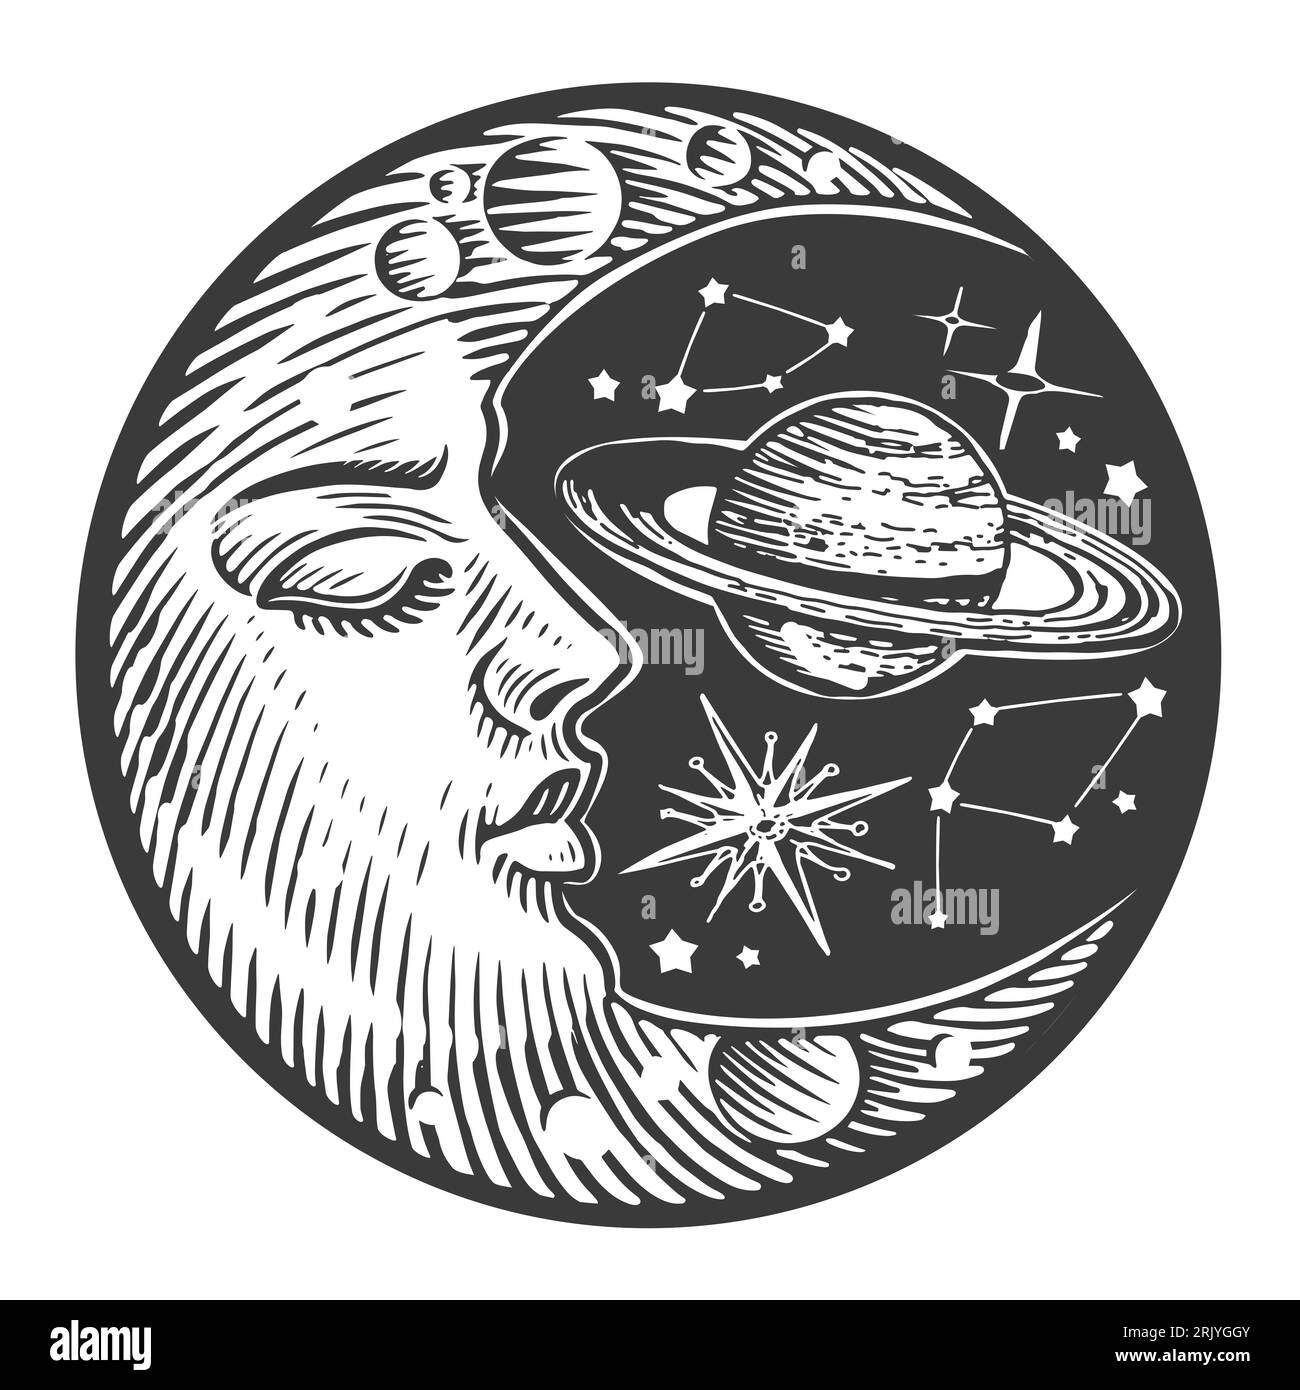 Luna a mezzaluna e stelle in incisione d'epoca. Illustrazione del design in stile boho Foto Stock